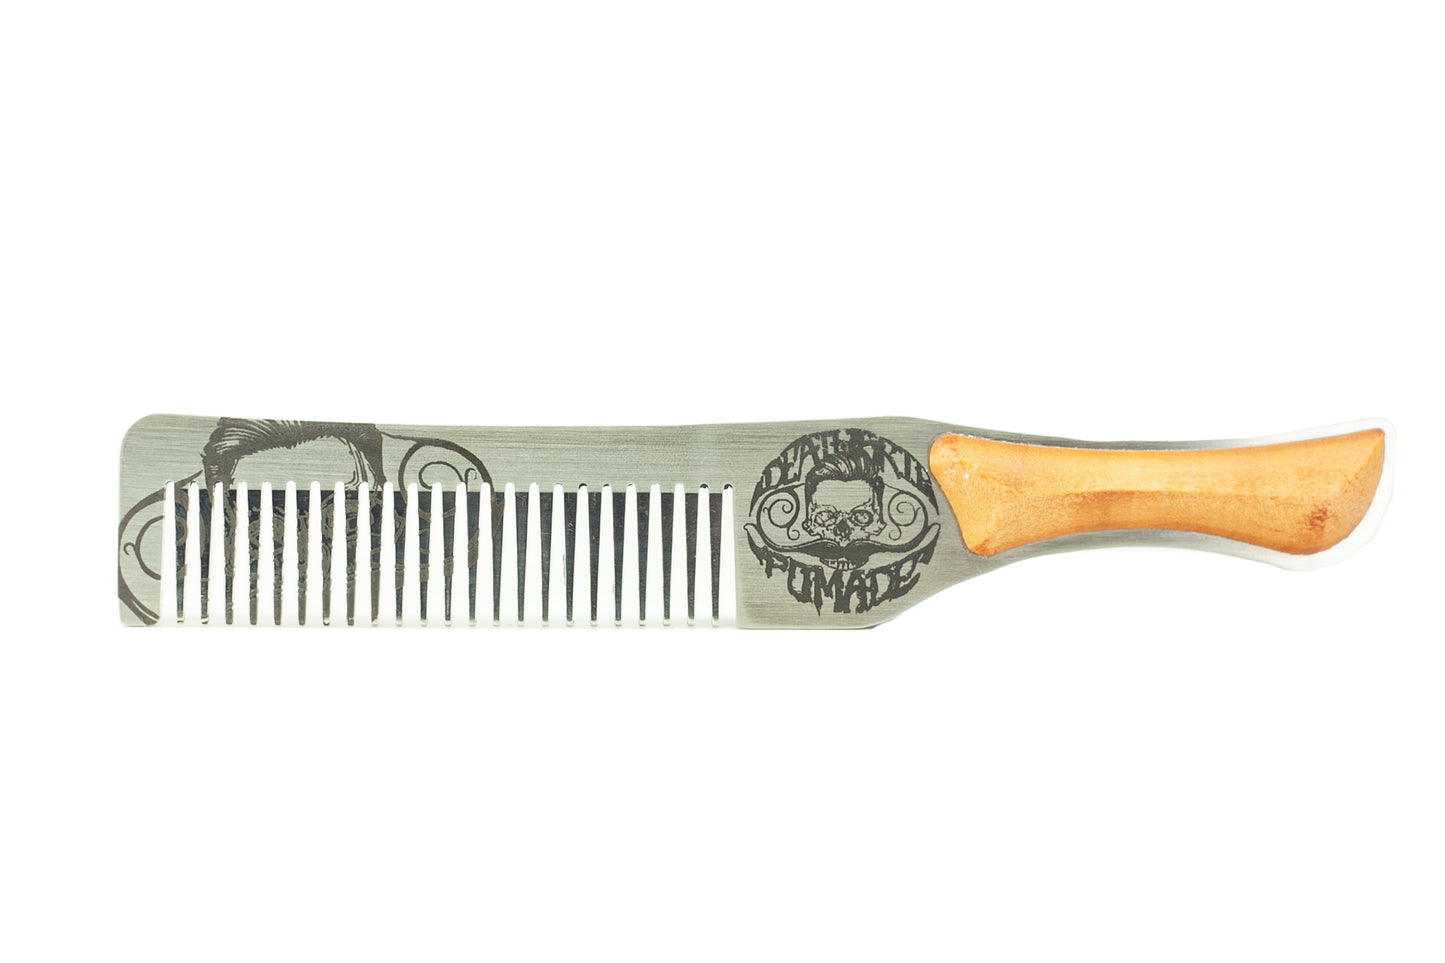 Death Grip Steel Metal Handcrafted Wood Handle Hair Comb